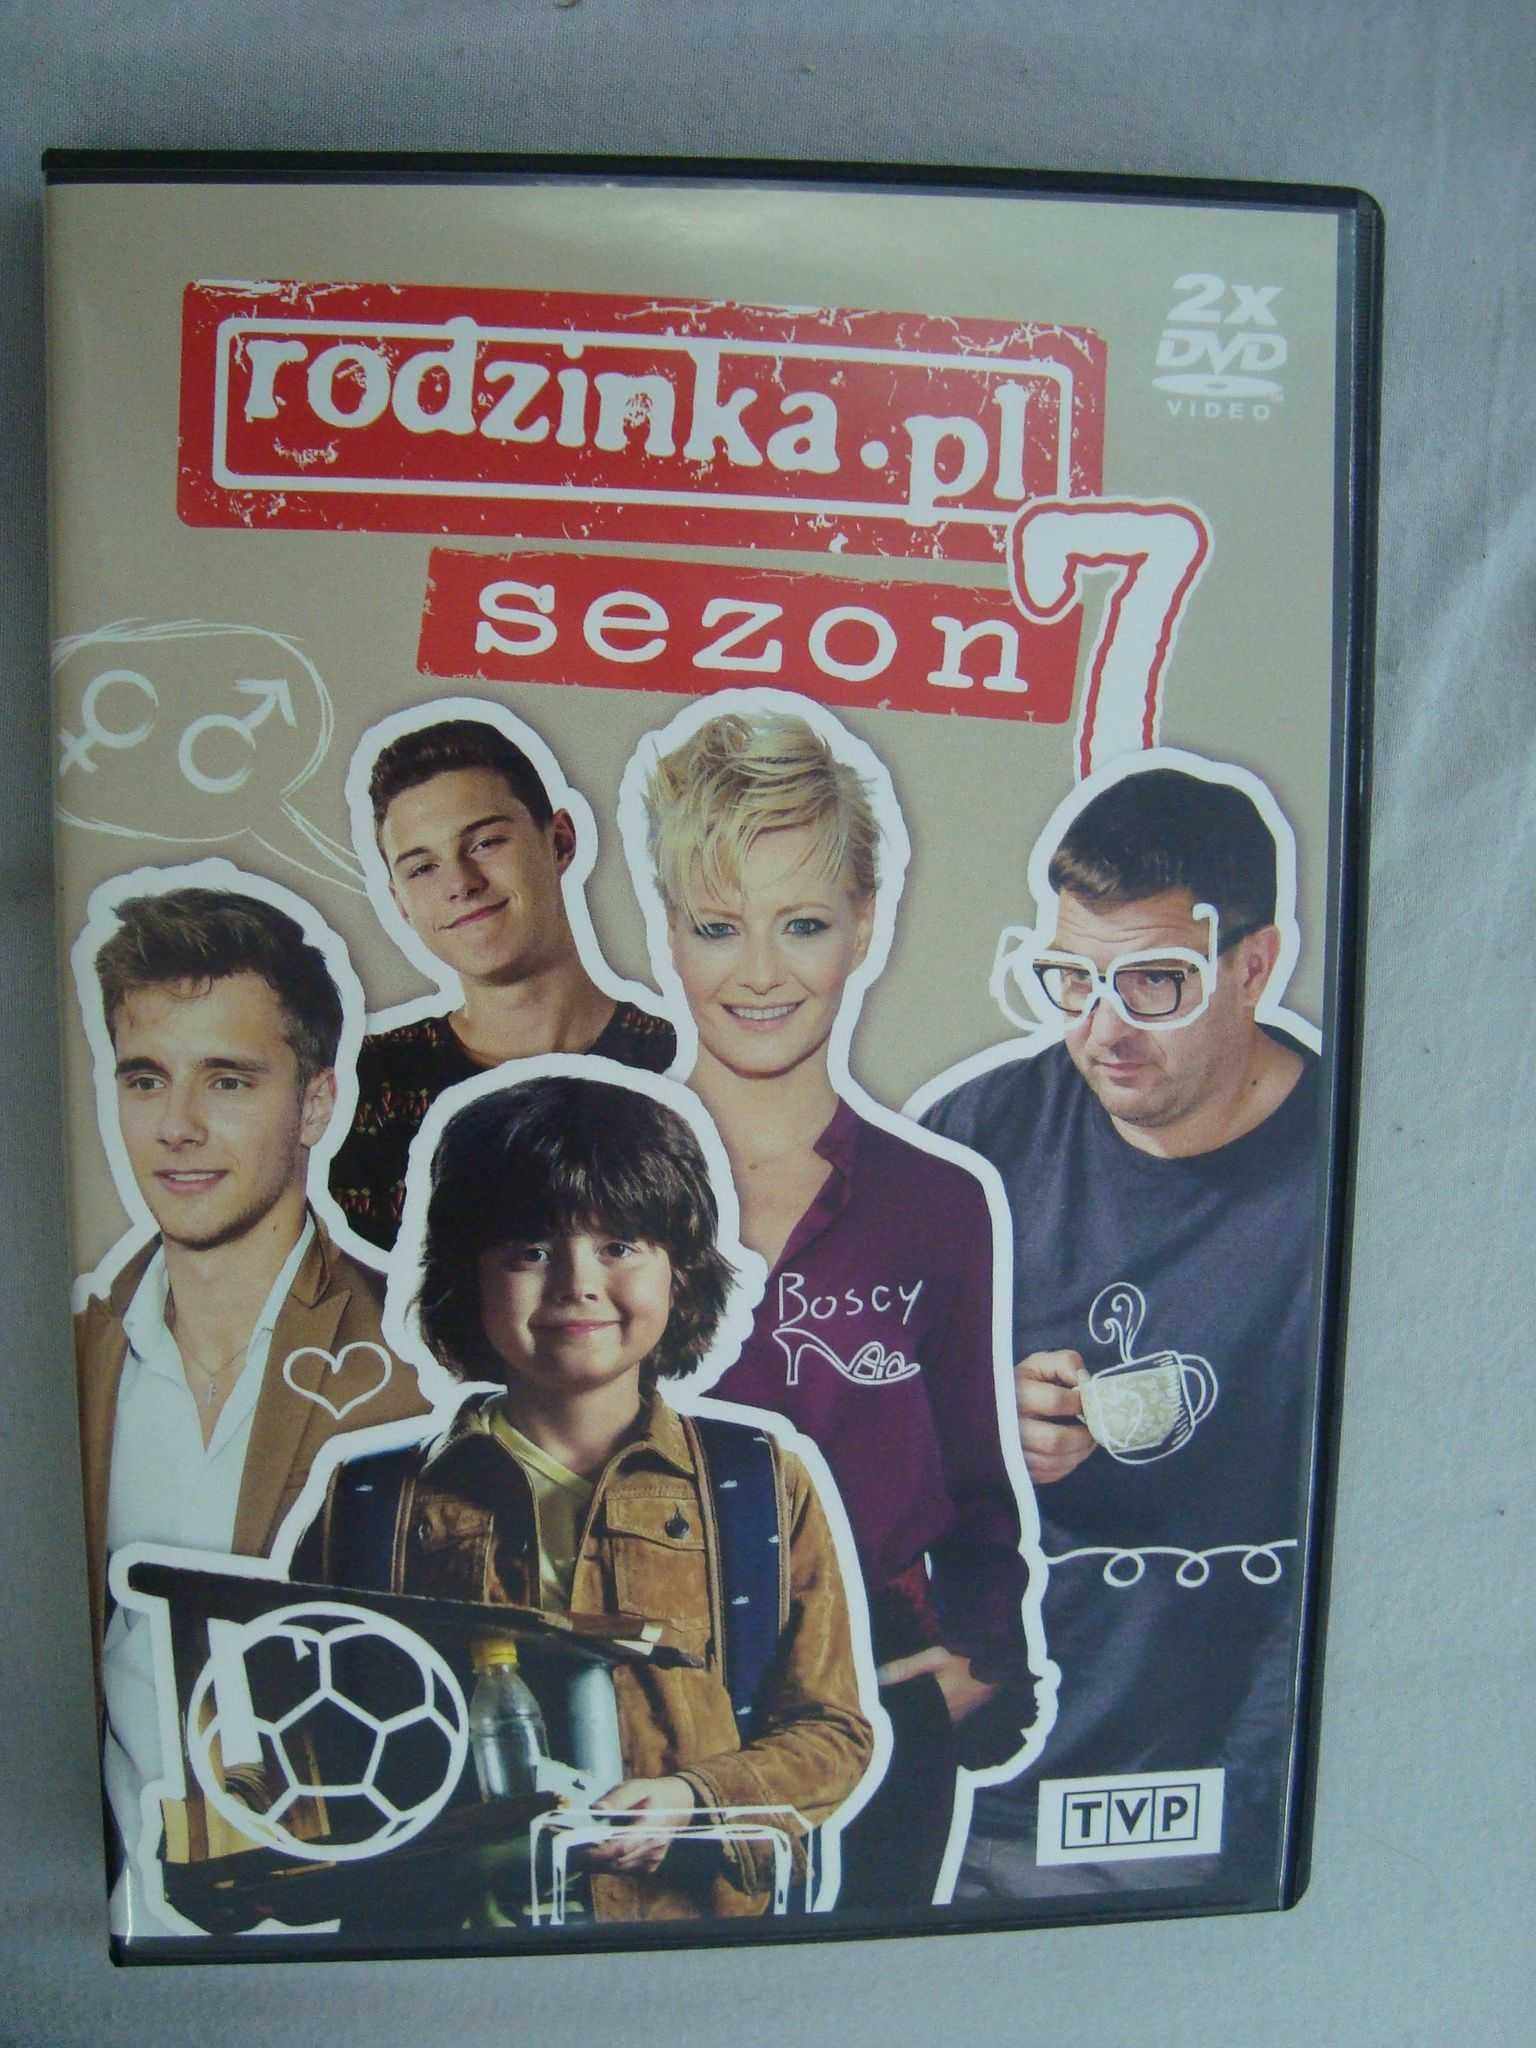 Rodzinka PL Rodzinka.pl Sezon 7